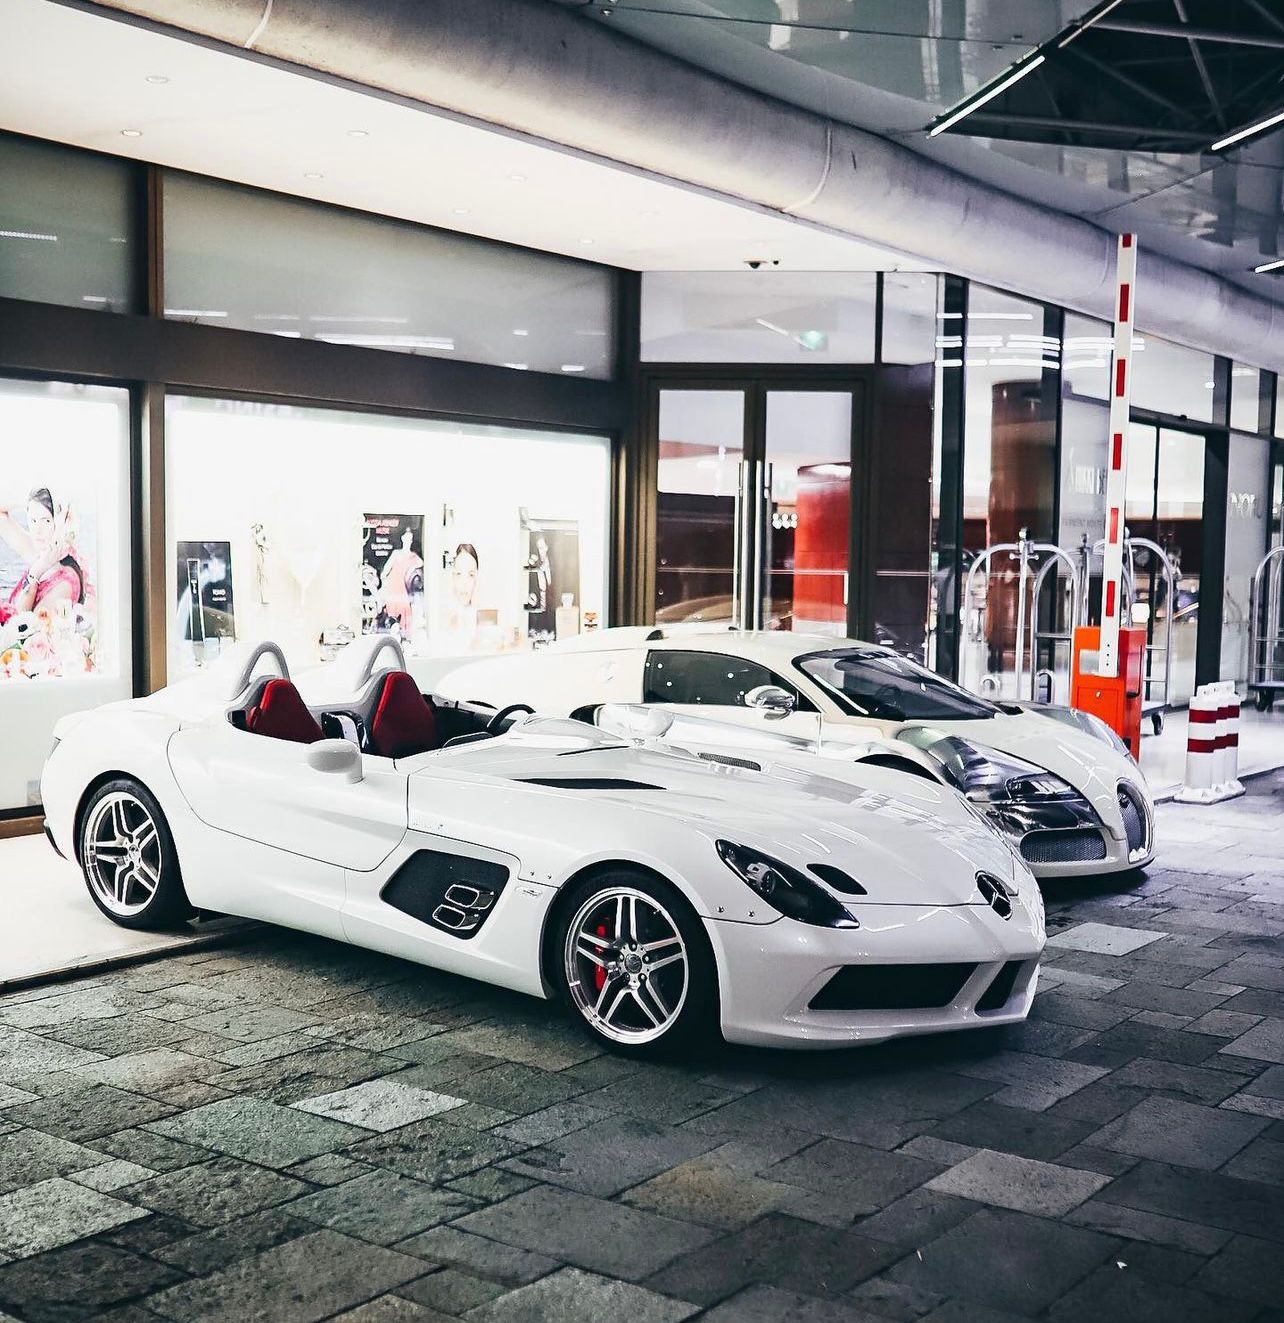 Conheça a coleção de carros superesportivos de Adrian Sutil